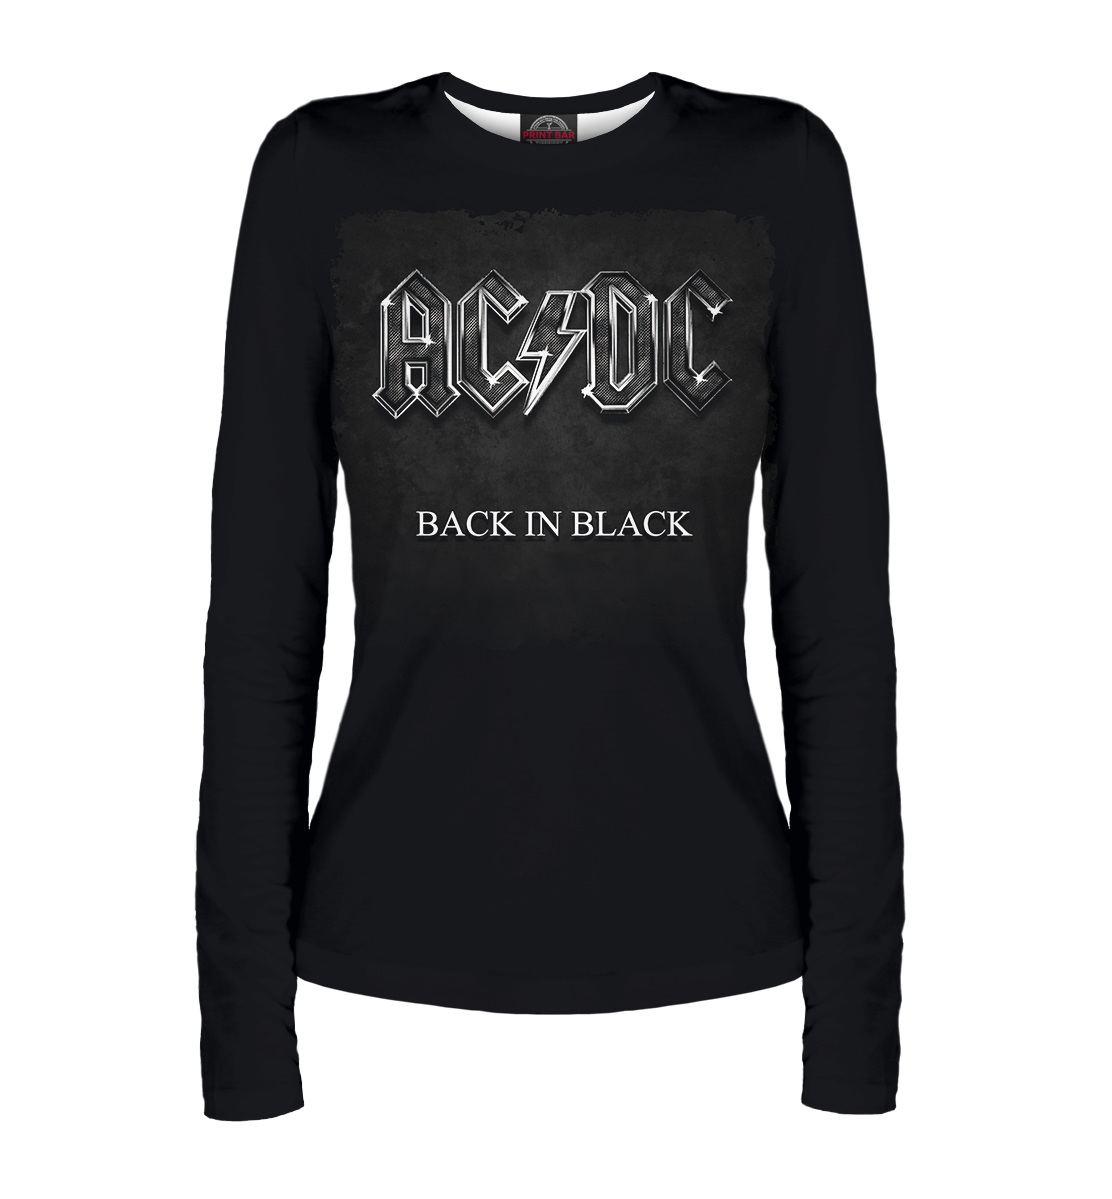 Back in black — AC/DC